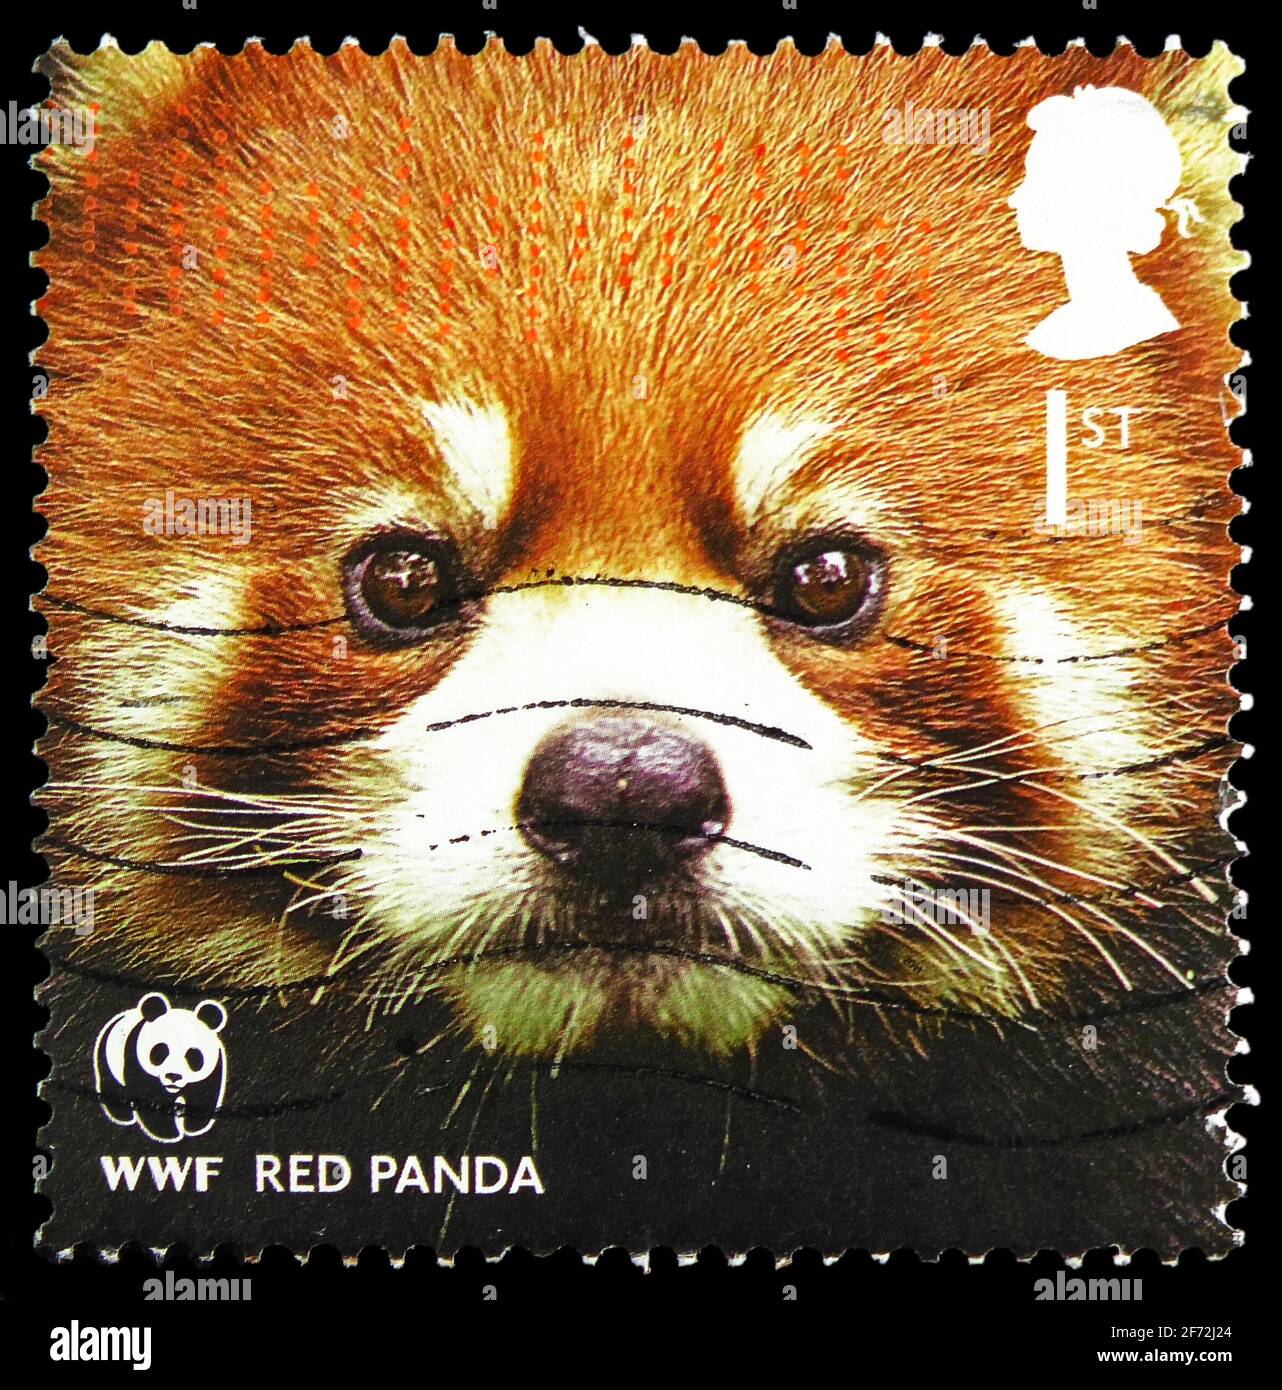 MOSCOU, RUSSIE - 22 DÉCEMBRE 2020: Timbre-poste imprimé au Royaume-Uni montre le Panda rouge (Ailurus fulgens), série du Fonds mondial pour la nature, vers 2011 Banque D'Images